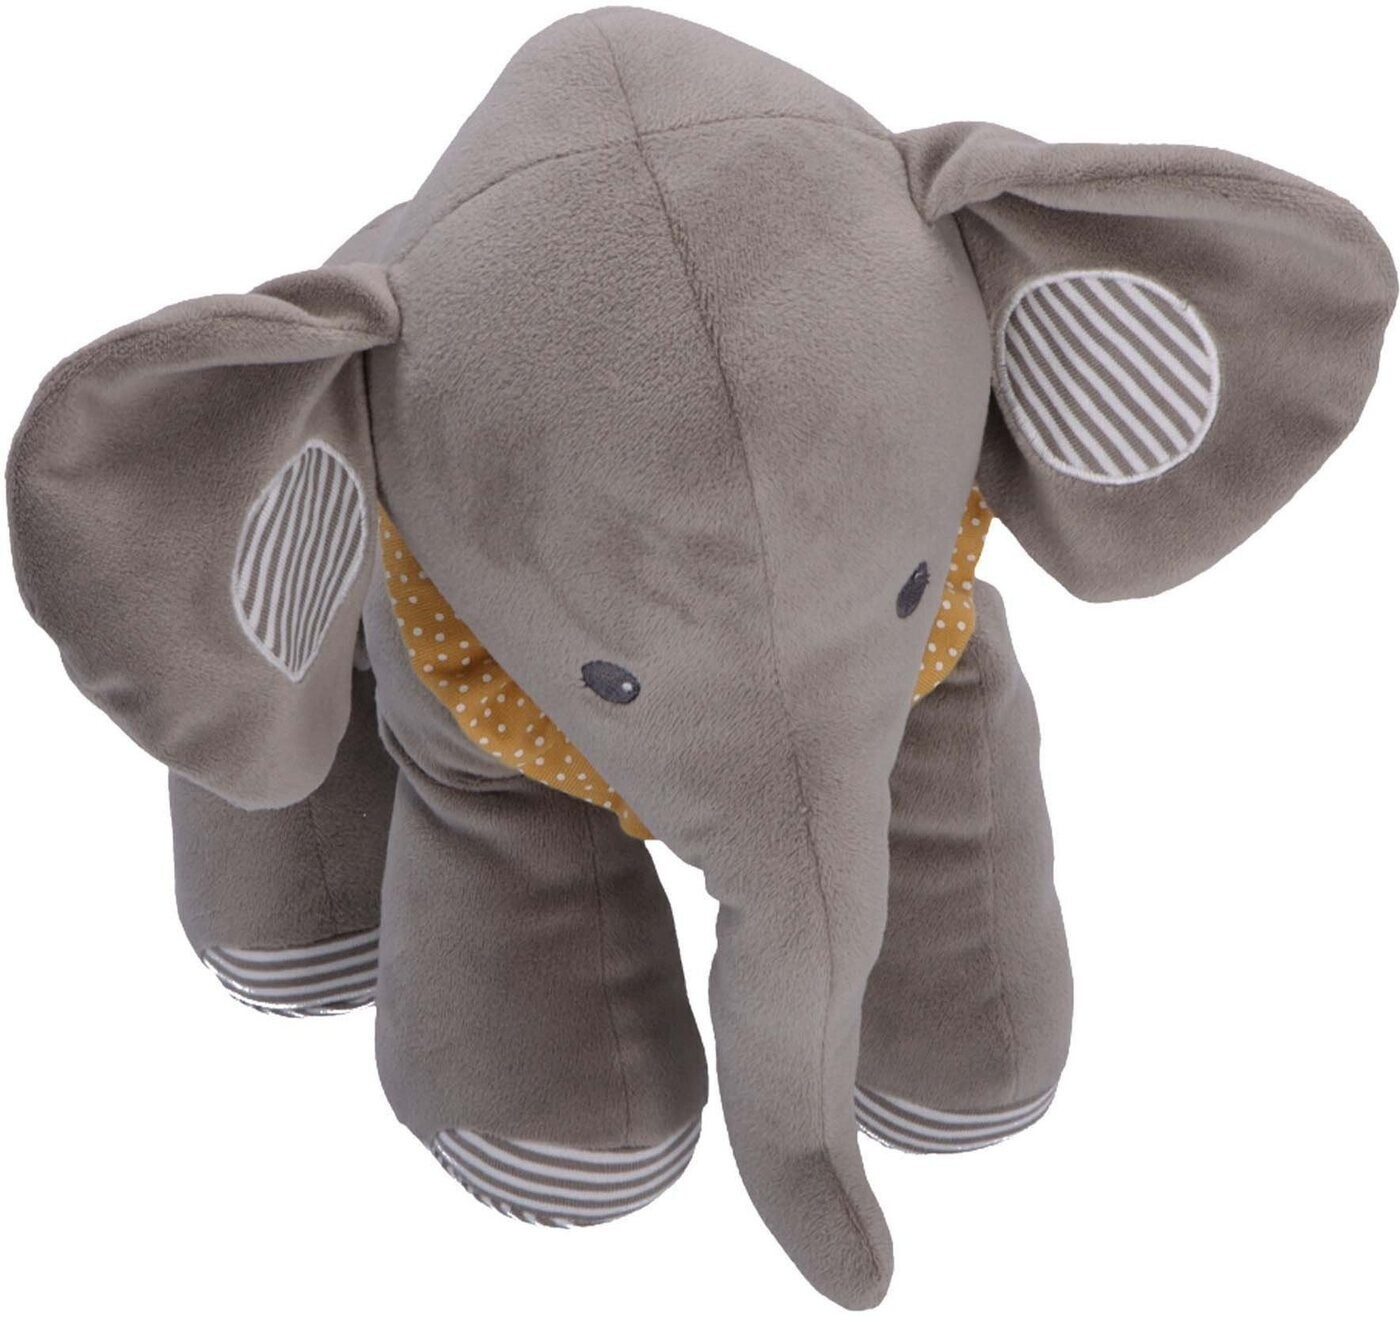 Sterntaler Sternchen Elefant Eddy (3022211) ab 27,76 € | Preisvergleich bei